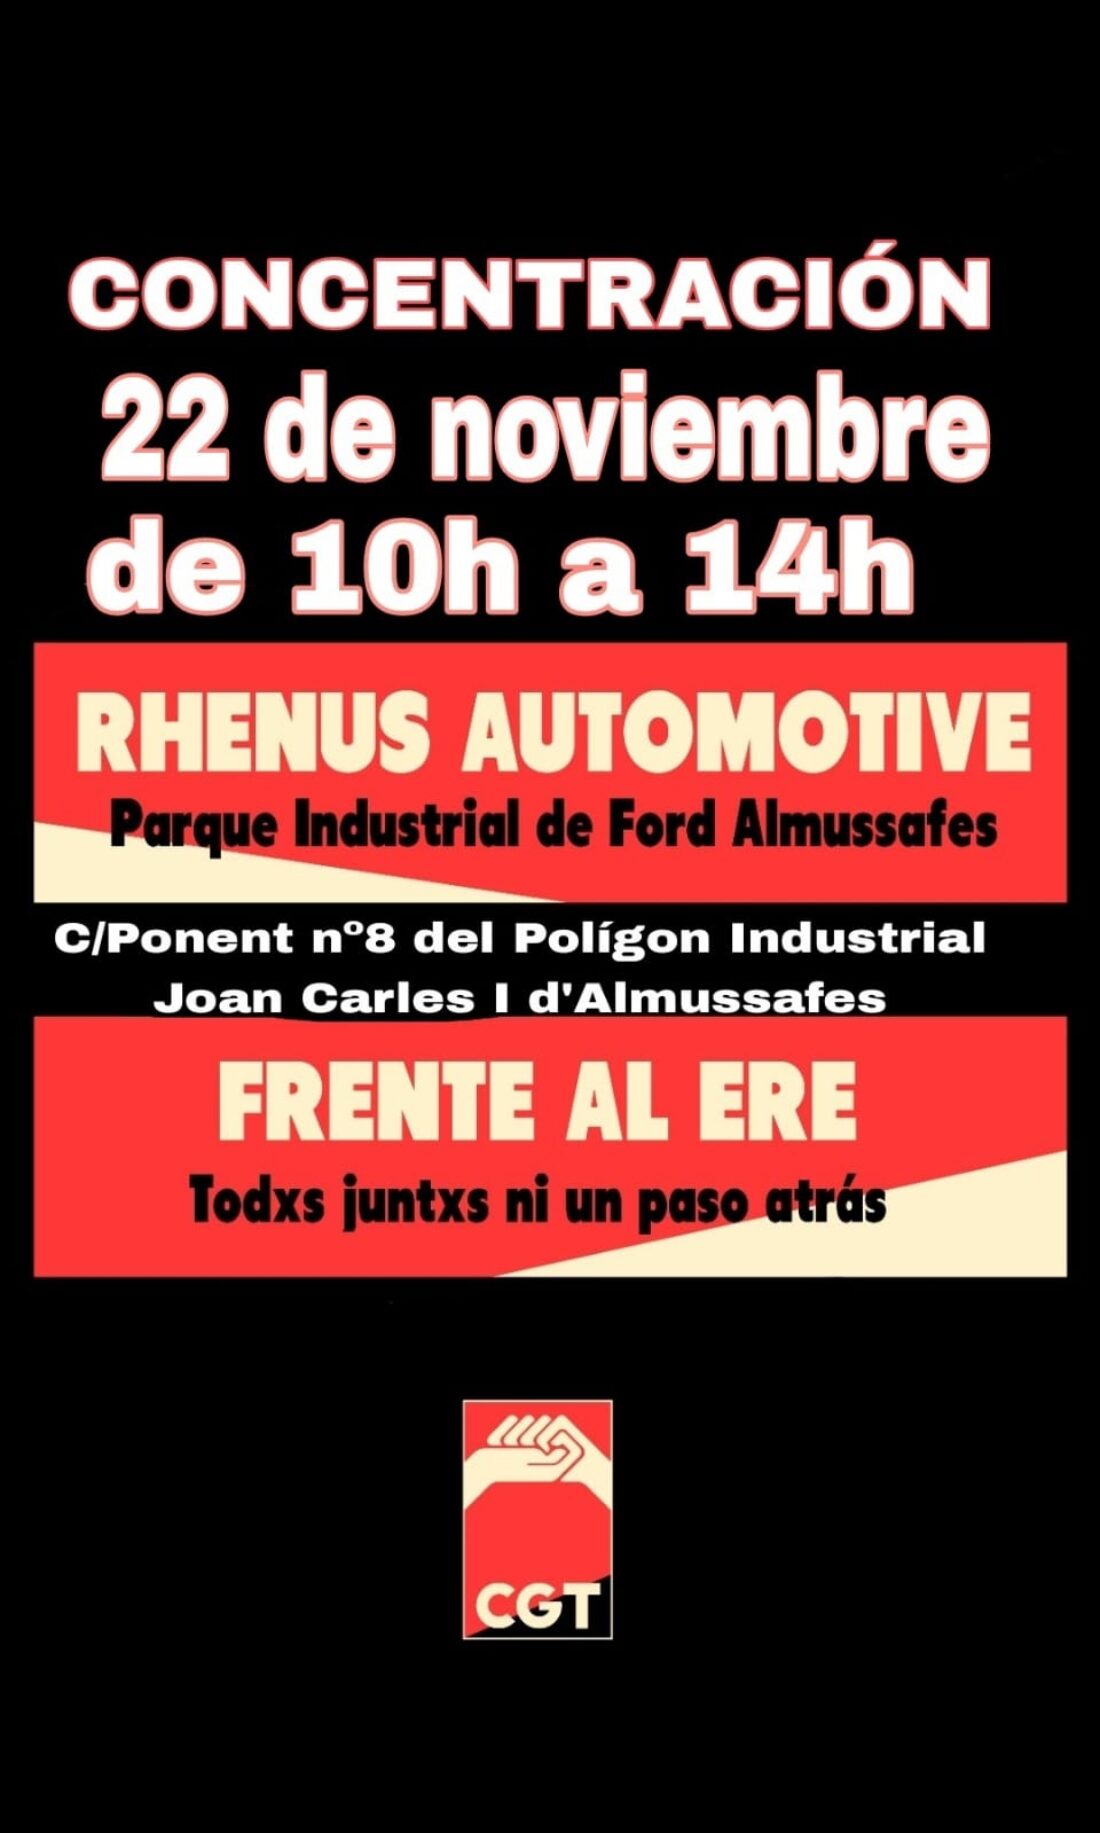 22N: Concentración contra los despidos en Rhenus Automotive